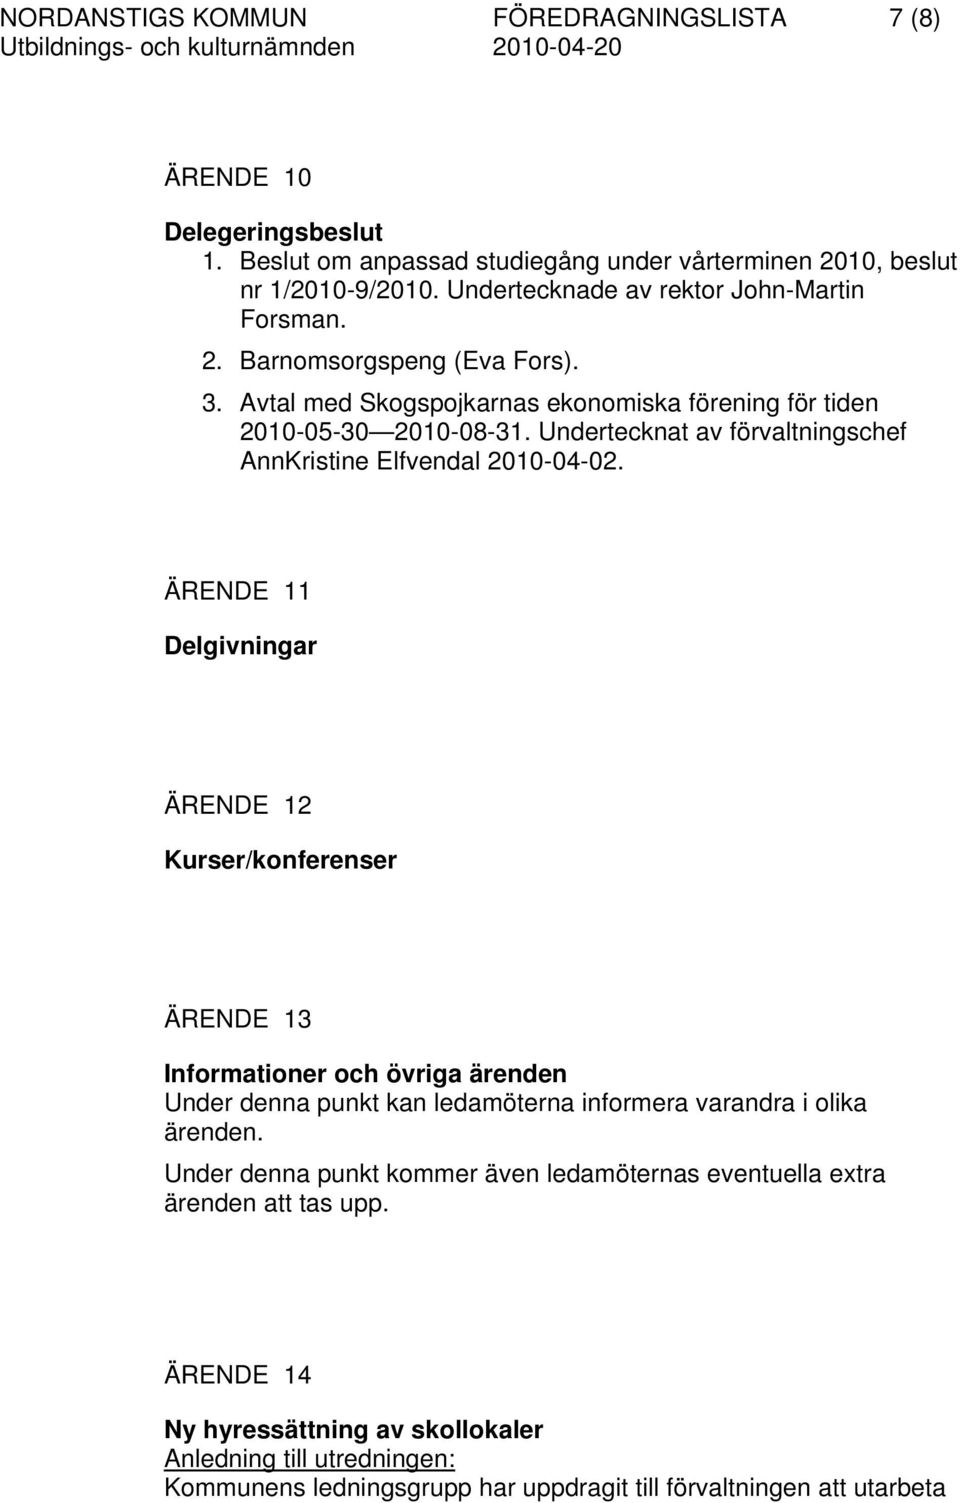 Undertecknat av förvaltningschef AnnKristine Elfvendal 2010-04-02.